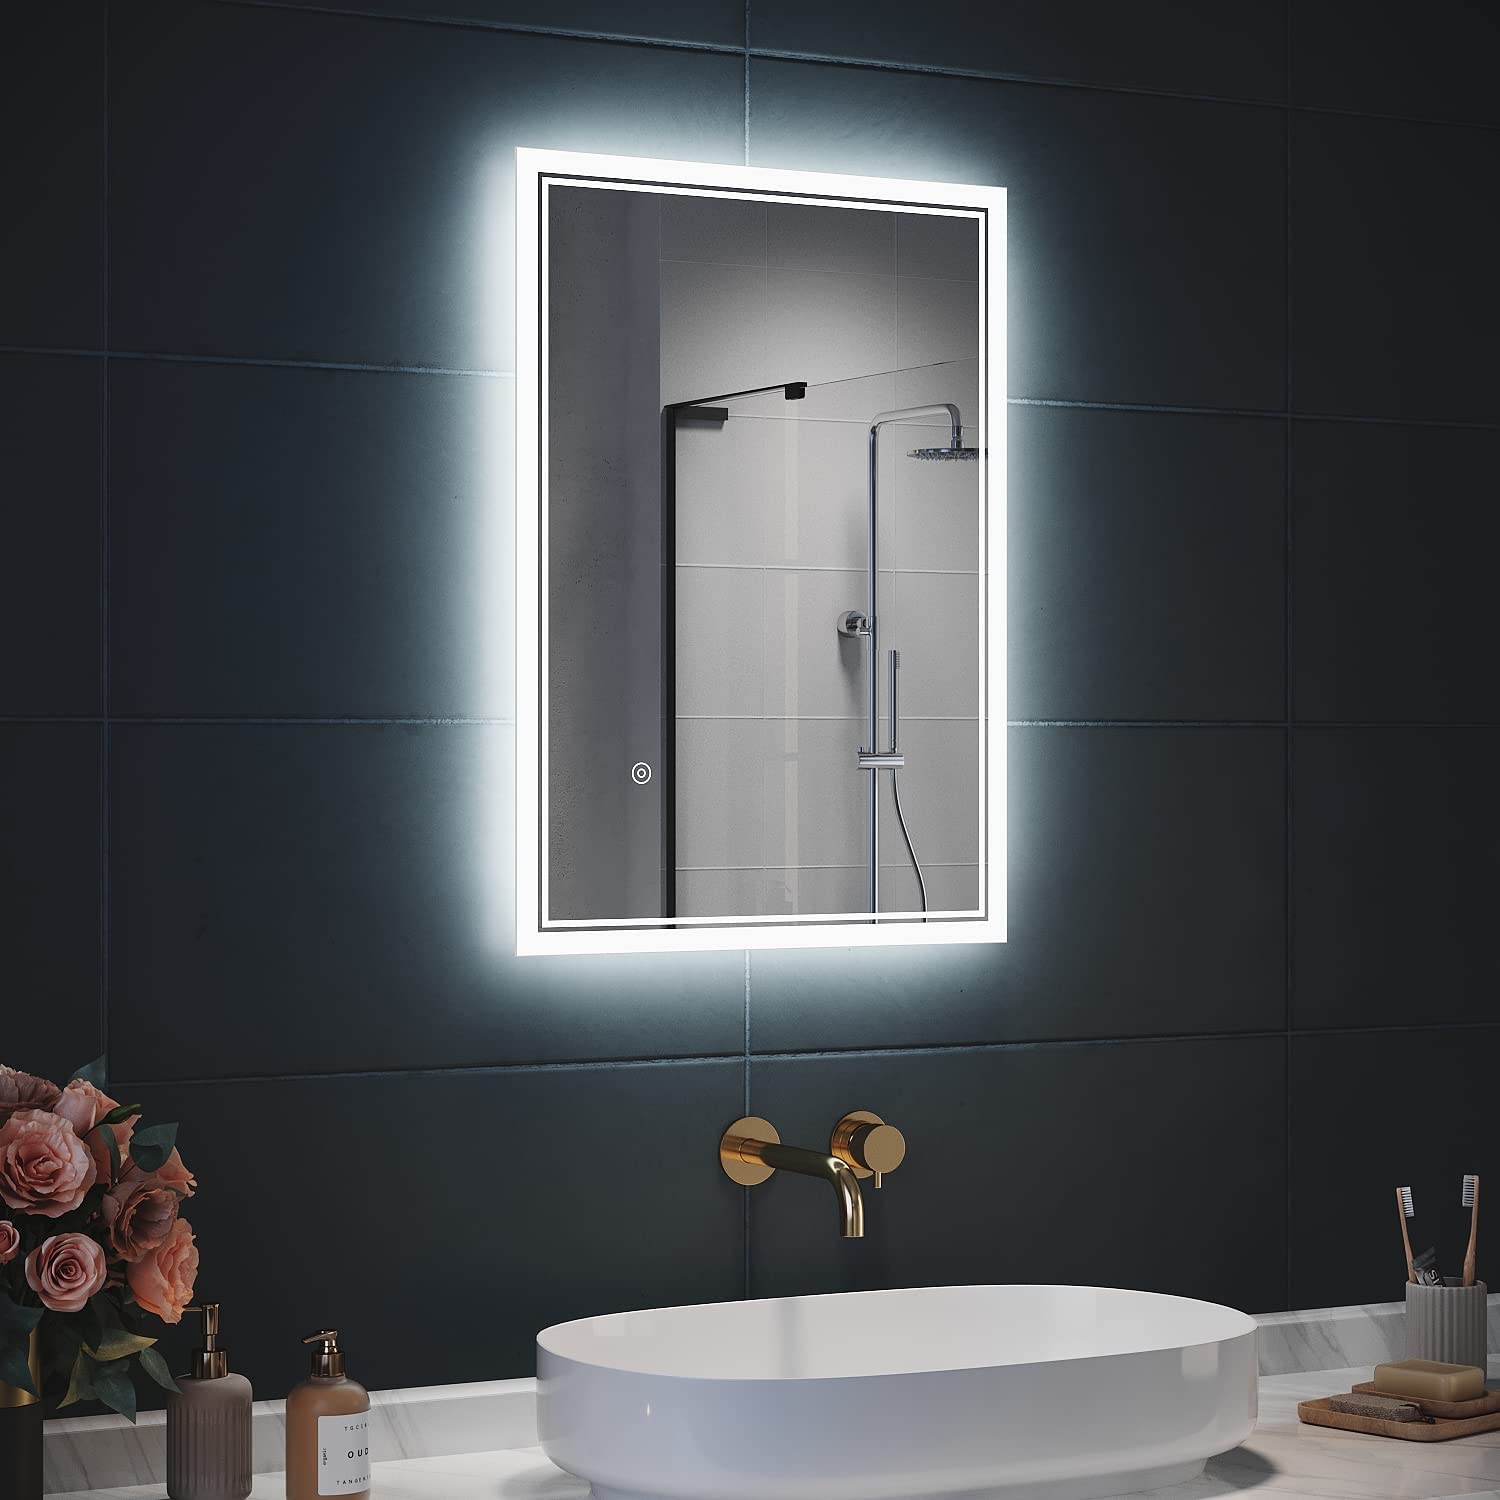 SIRHONA 3X loupe Miroir LED Salle de Bain avec éclairage, Miroir avec Horloge Numérique, Miroir Lumineux Salle de Bain Anti-Buée, 100x60cm - SIRHONA